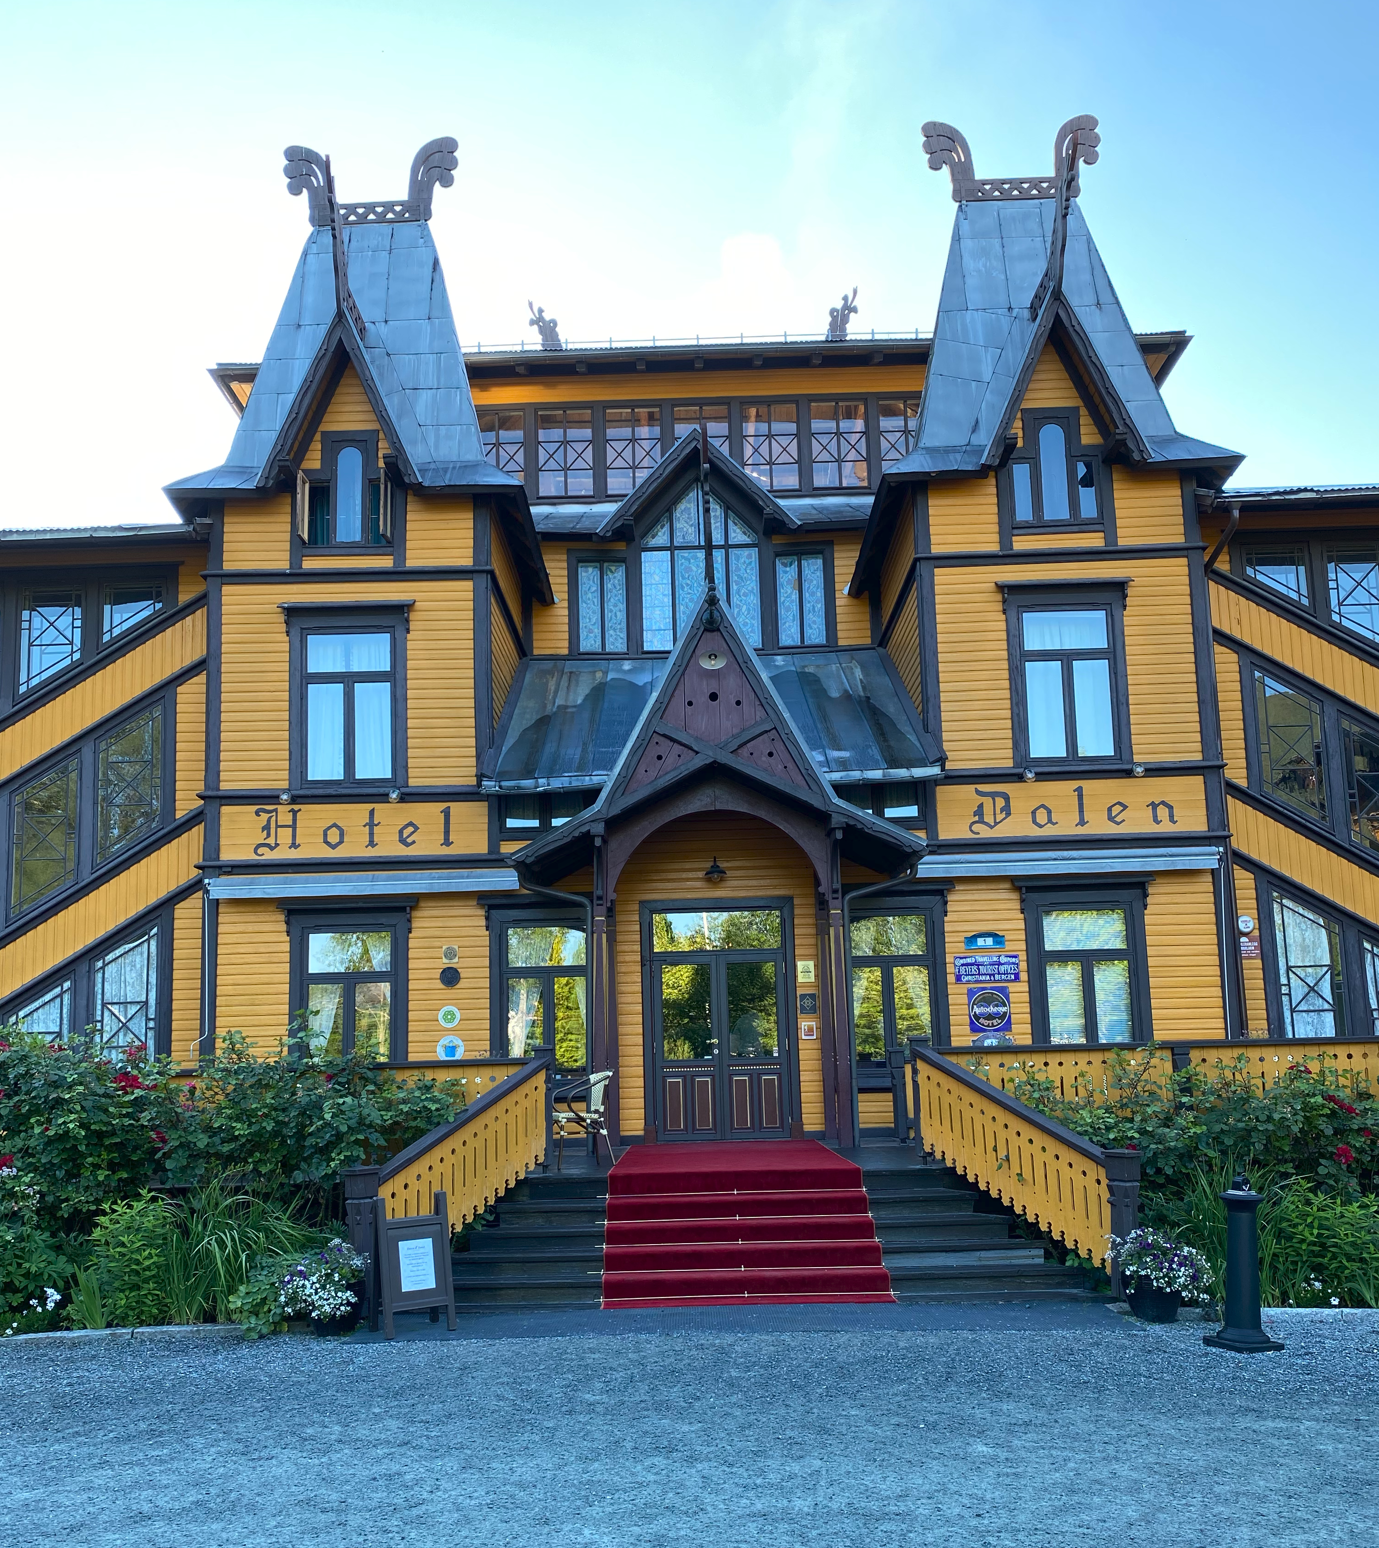 Dalen Hotell - Telemarkskanalen